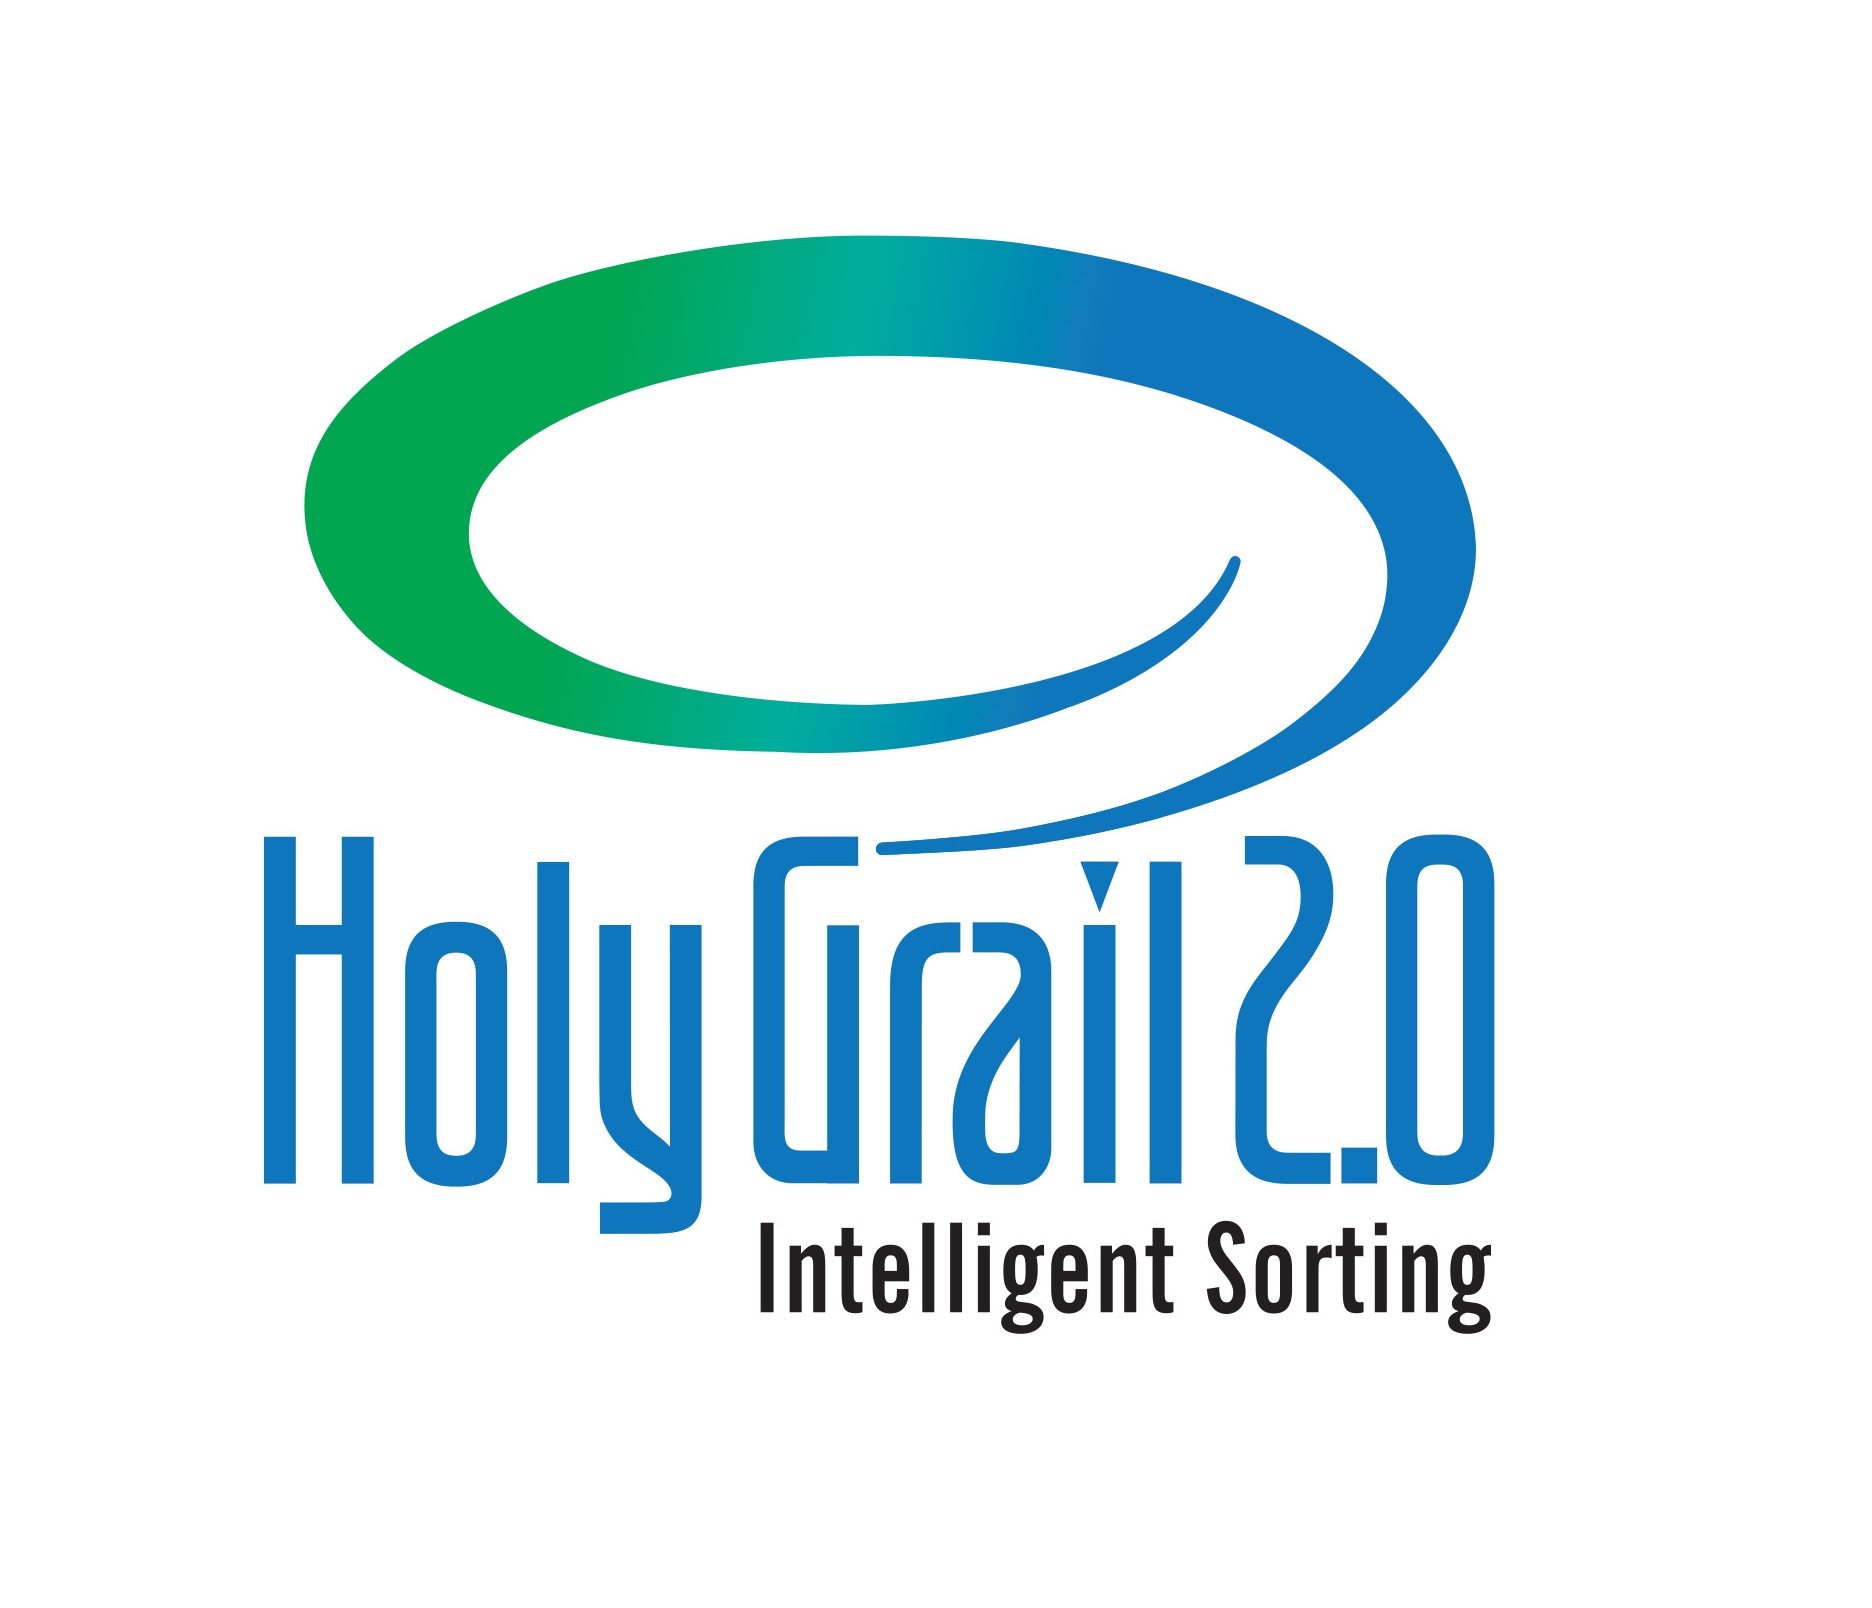 holy grail logo